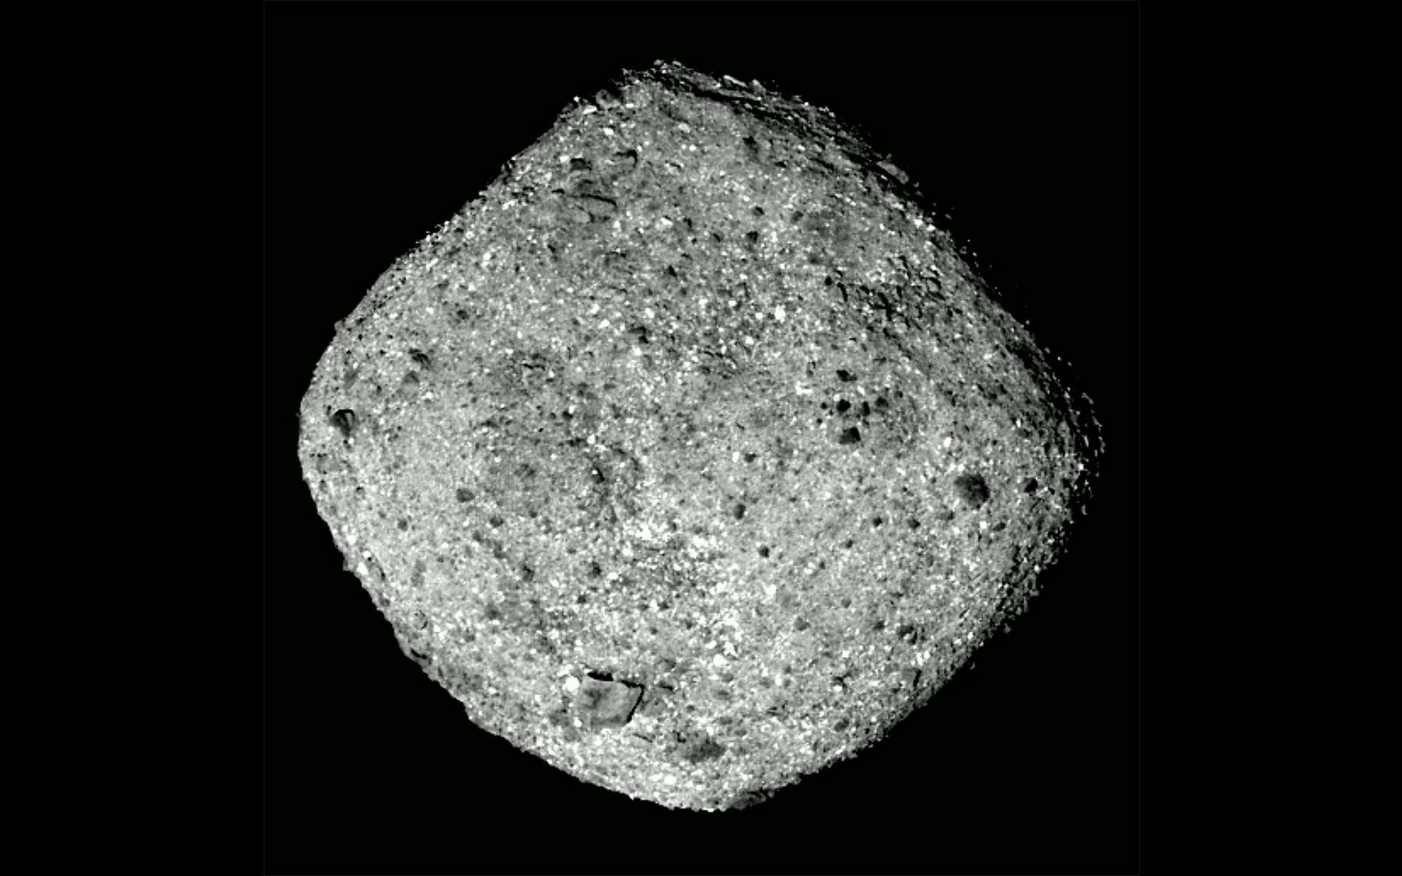 La sonde de la Nasa Osiris-Rex placée autour de l’astéroïde Bennu